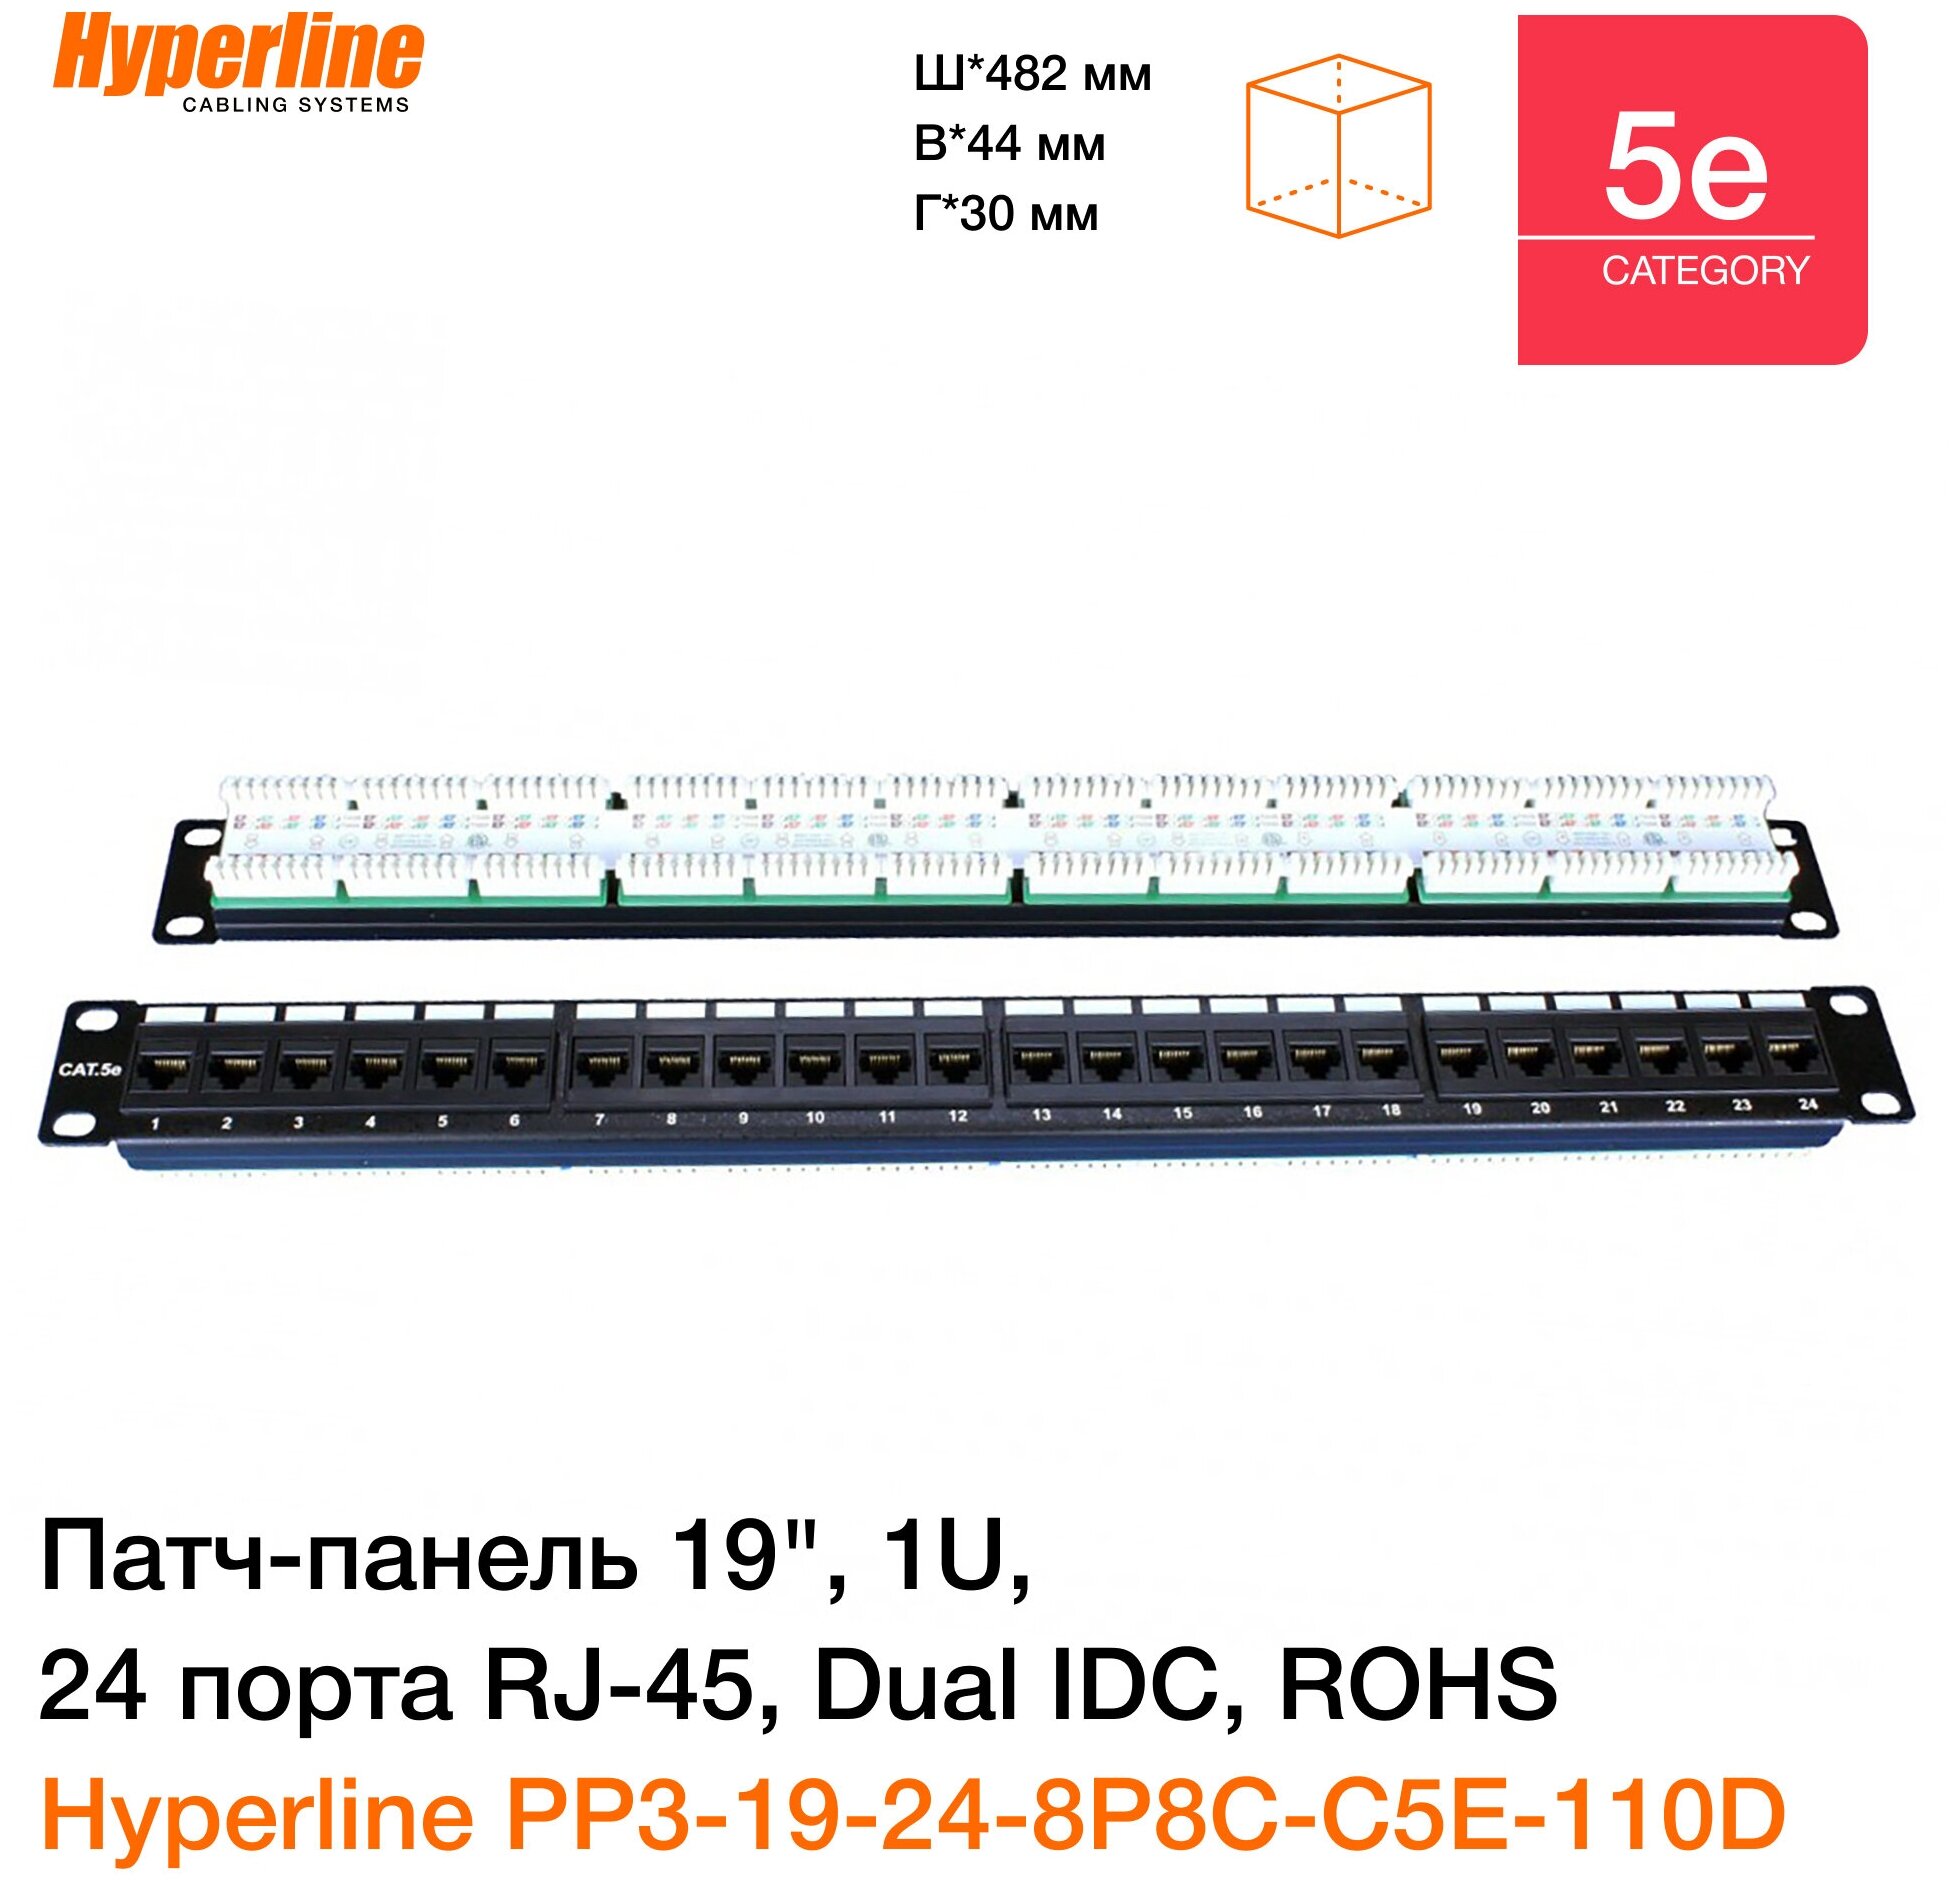 Патч-панель 19" Hyperline, 1U, 24 порта RJ-45, категория 5e, Dual IDC, ROHS, цвет черный